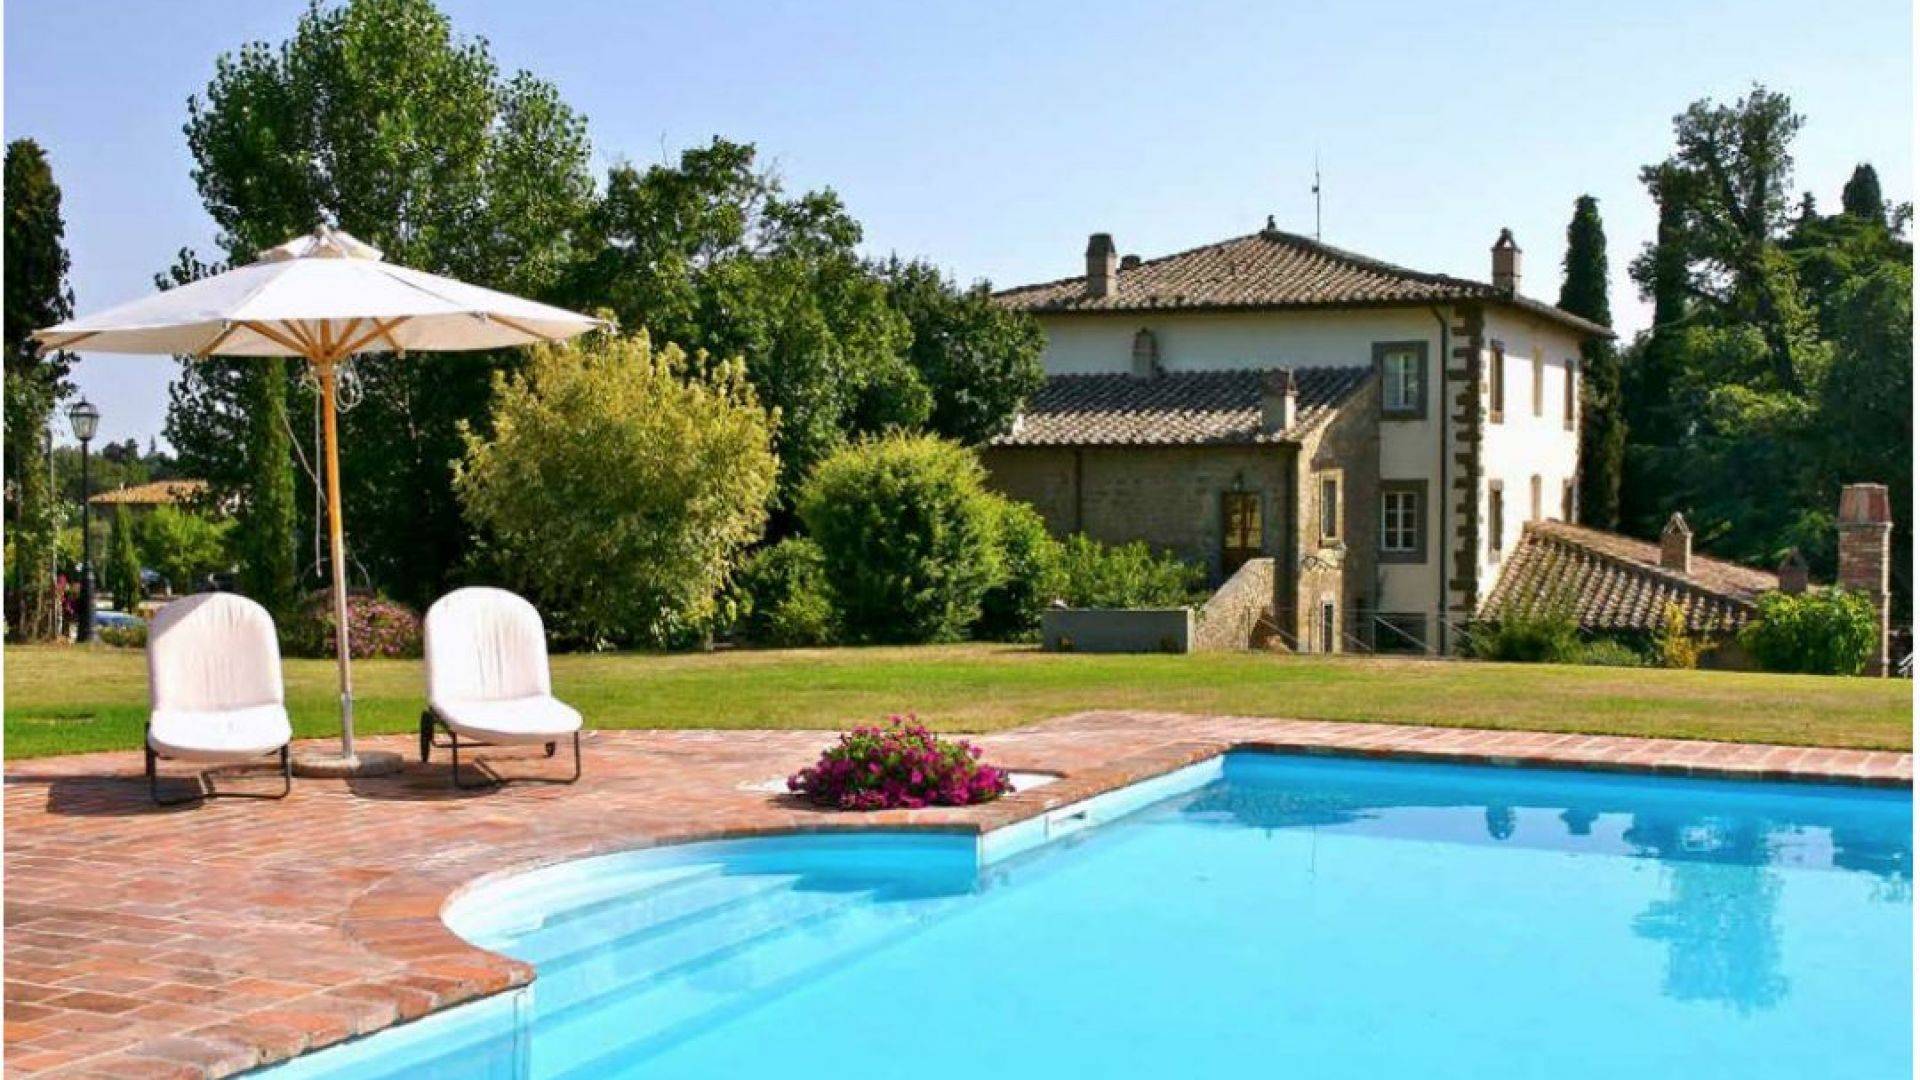 An 18th century villa renovated and transformed into a prestigious relais is for sale in Cortona, Arezzo.